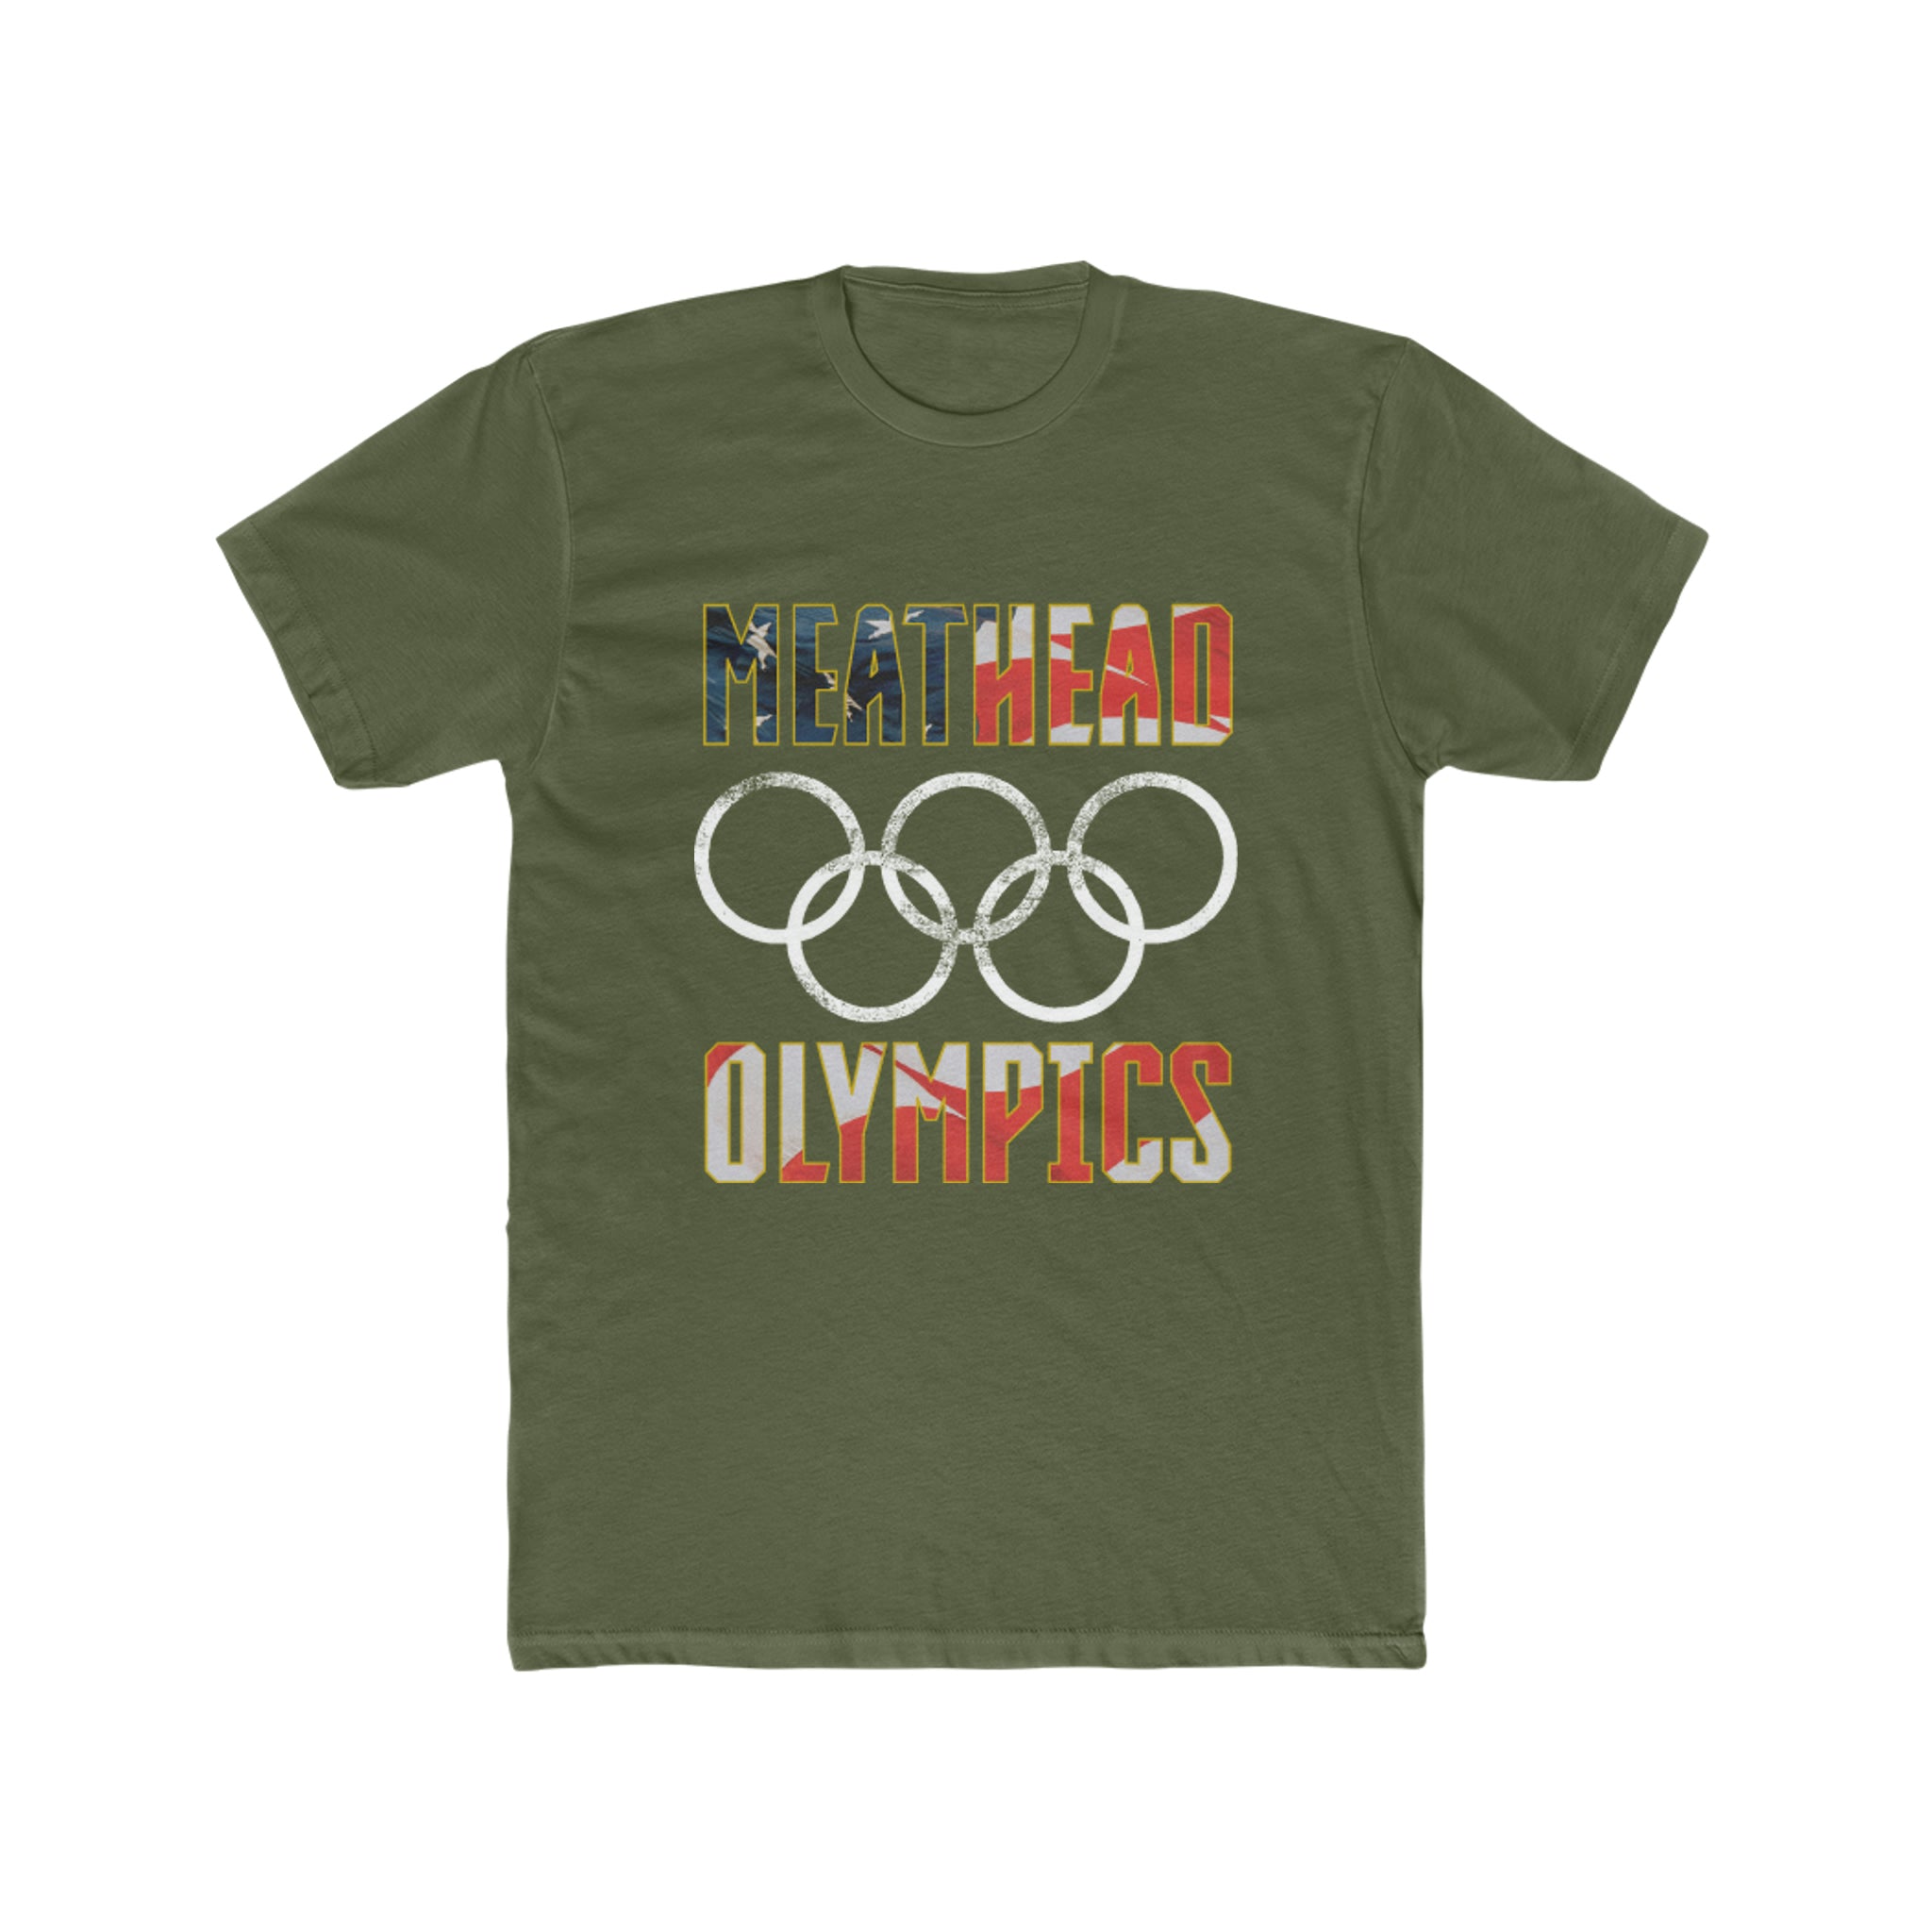 Meathead Olympics - Military Tee